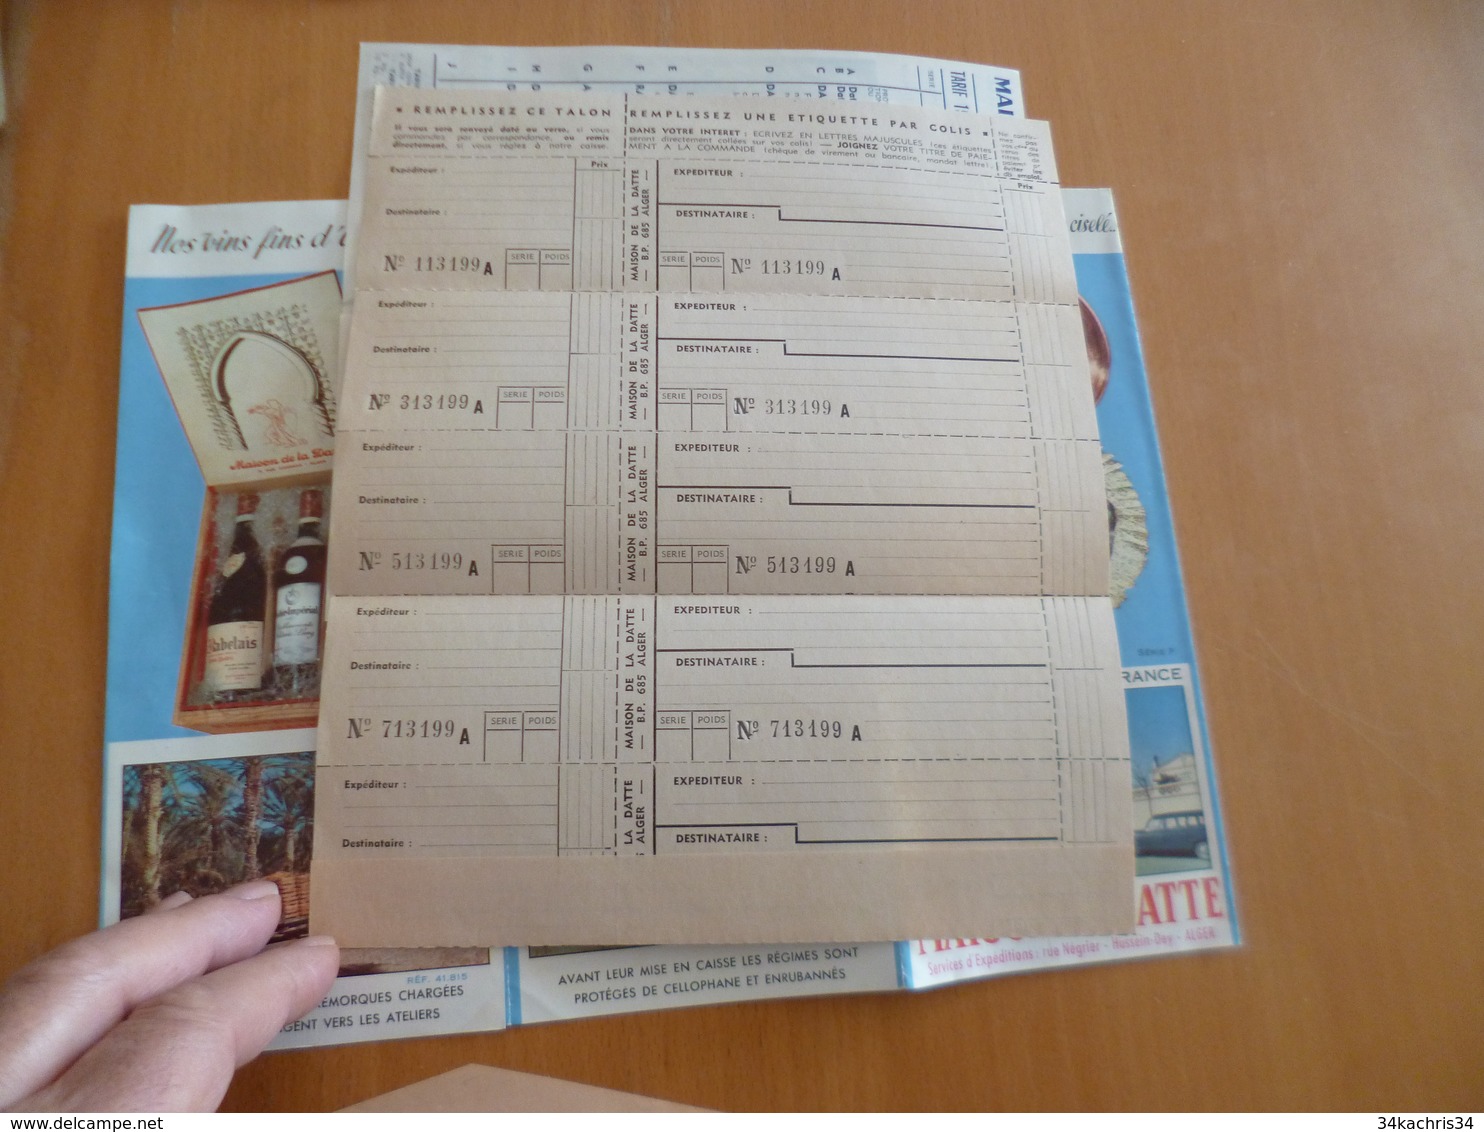 Lettre + Document Publicitaire La Maison De La Datte Alger 1960 - Alimentaire